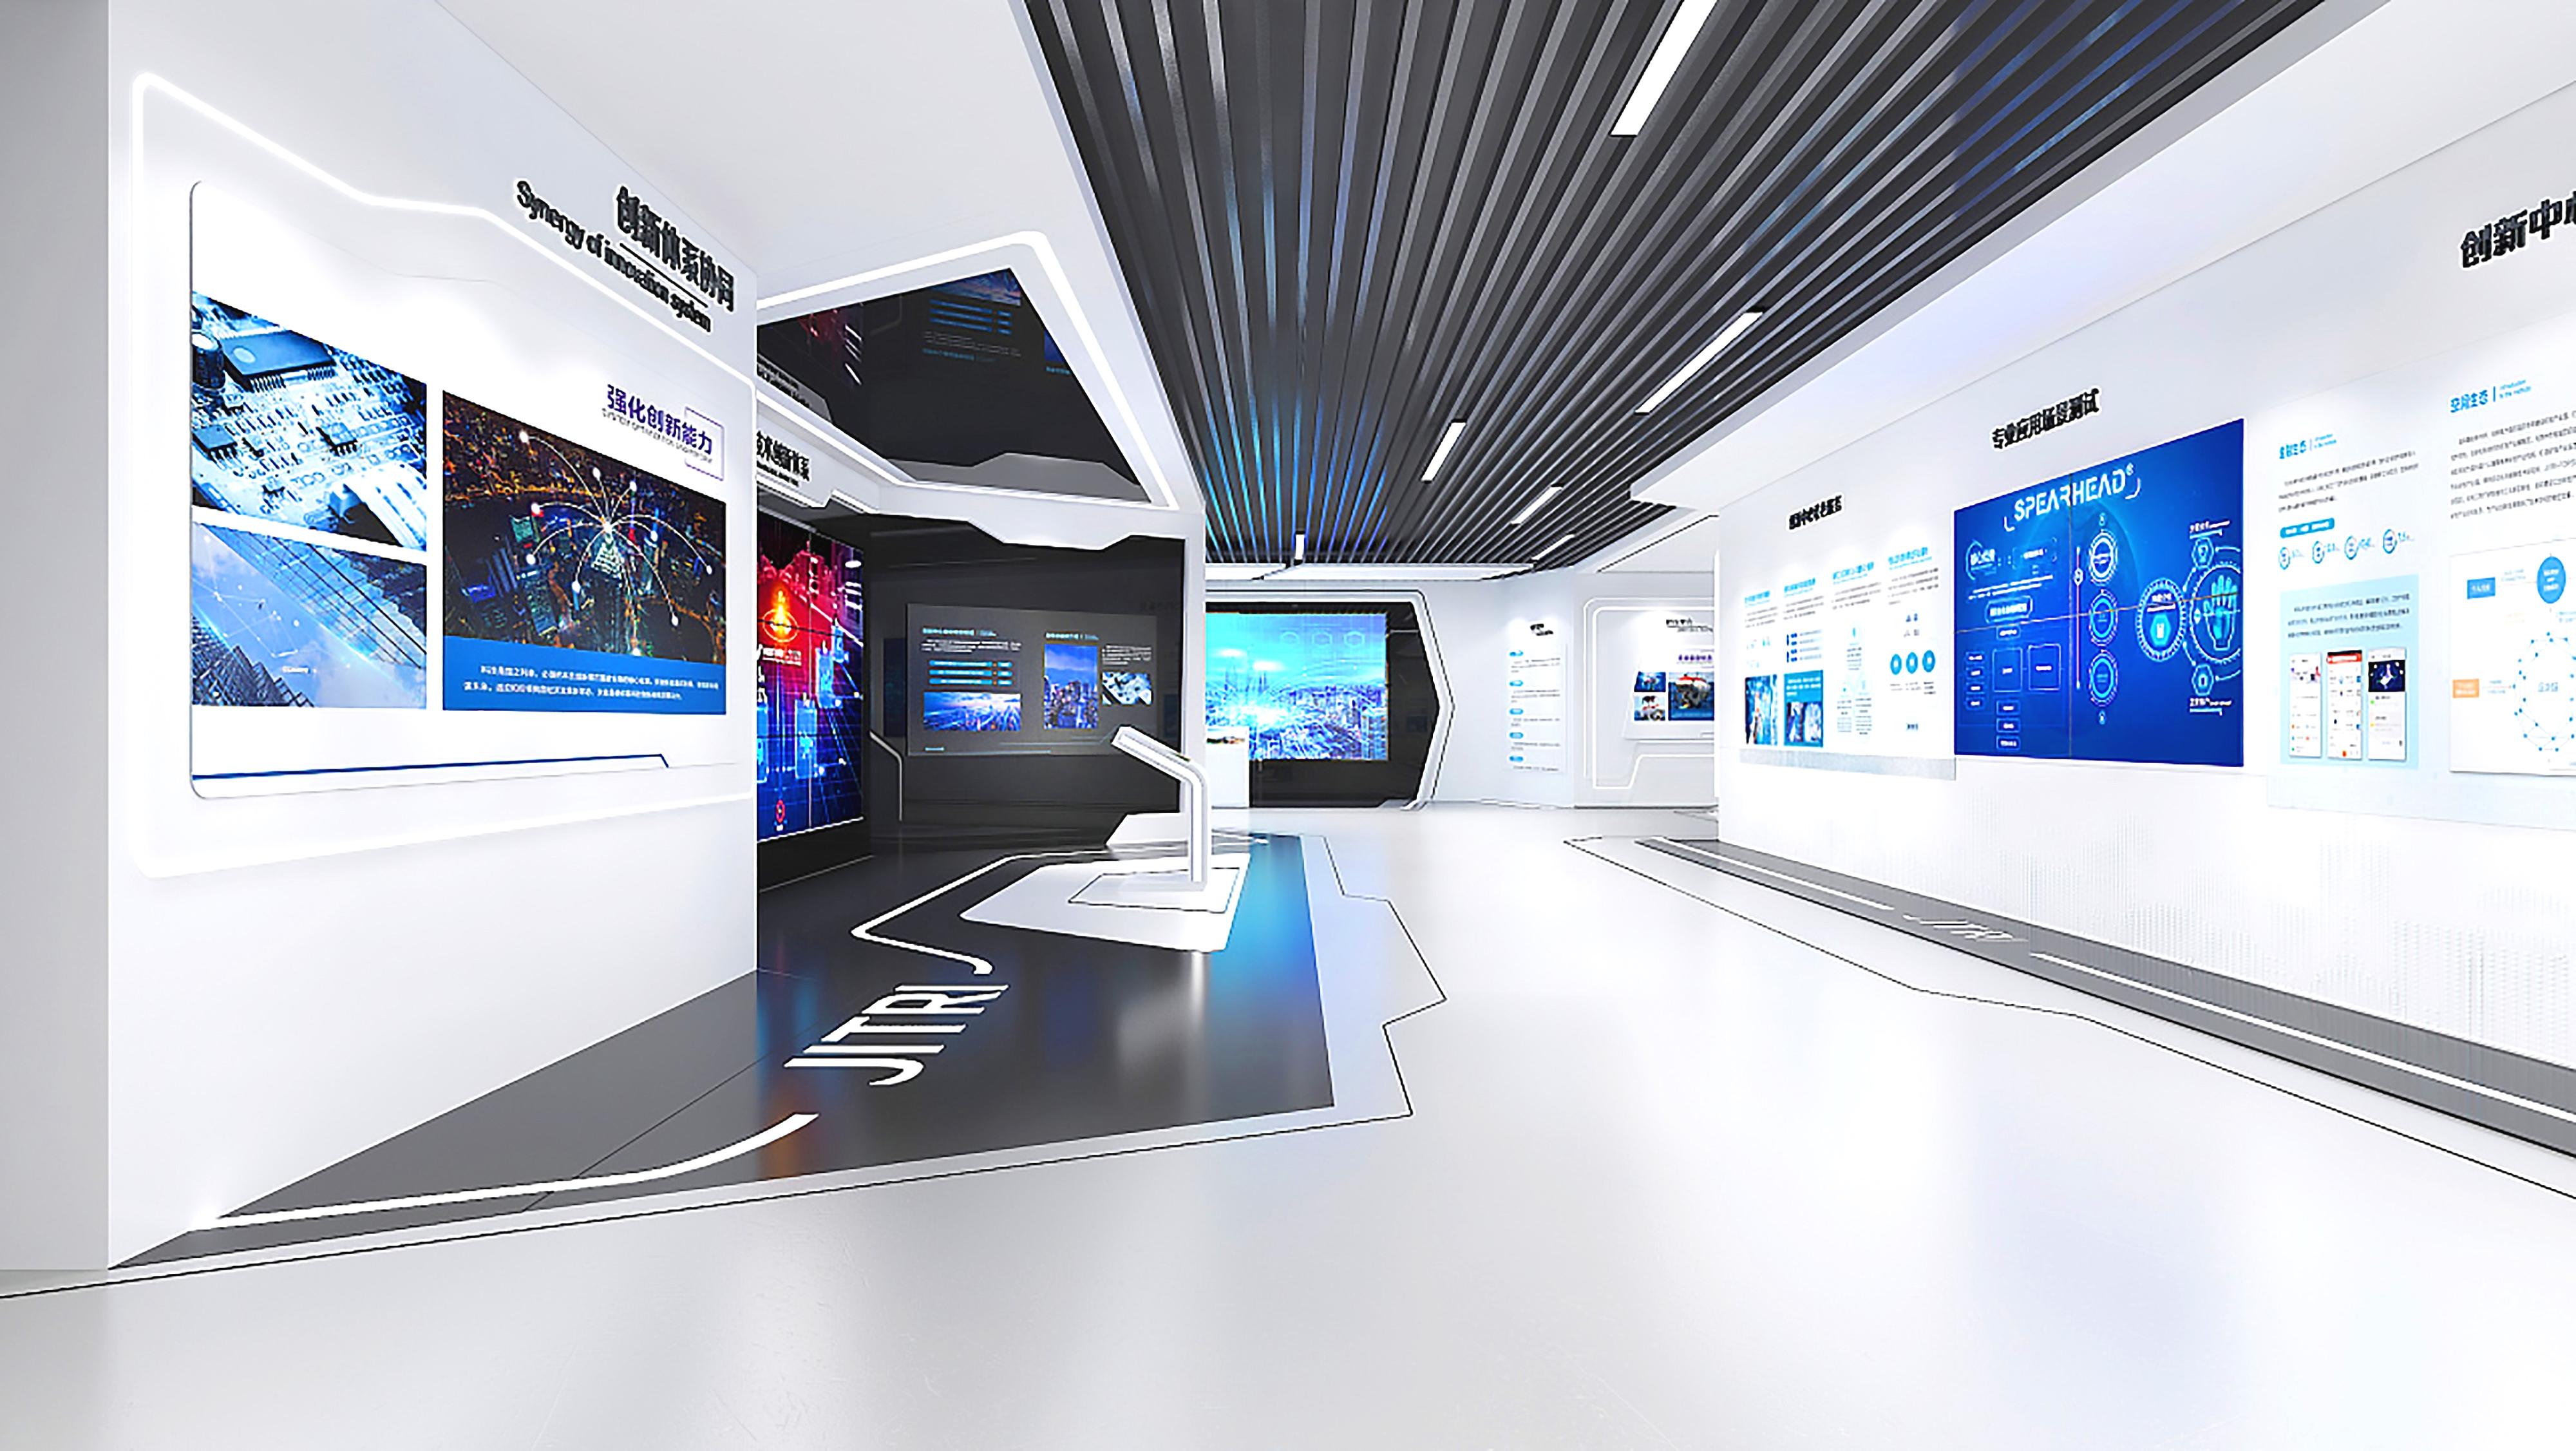 这是一个现代化的展览厅，墙上装有多个显示屏，展示科技信息。空间设计简洁，以白色和蓝色为主色调。